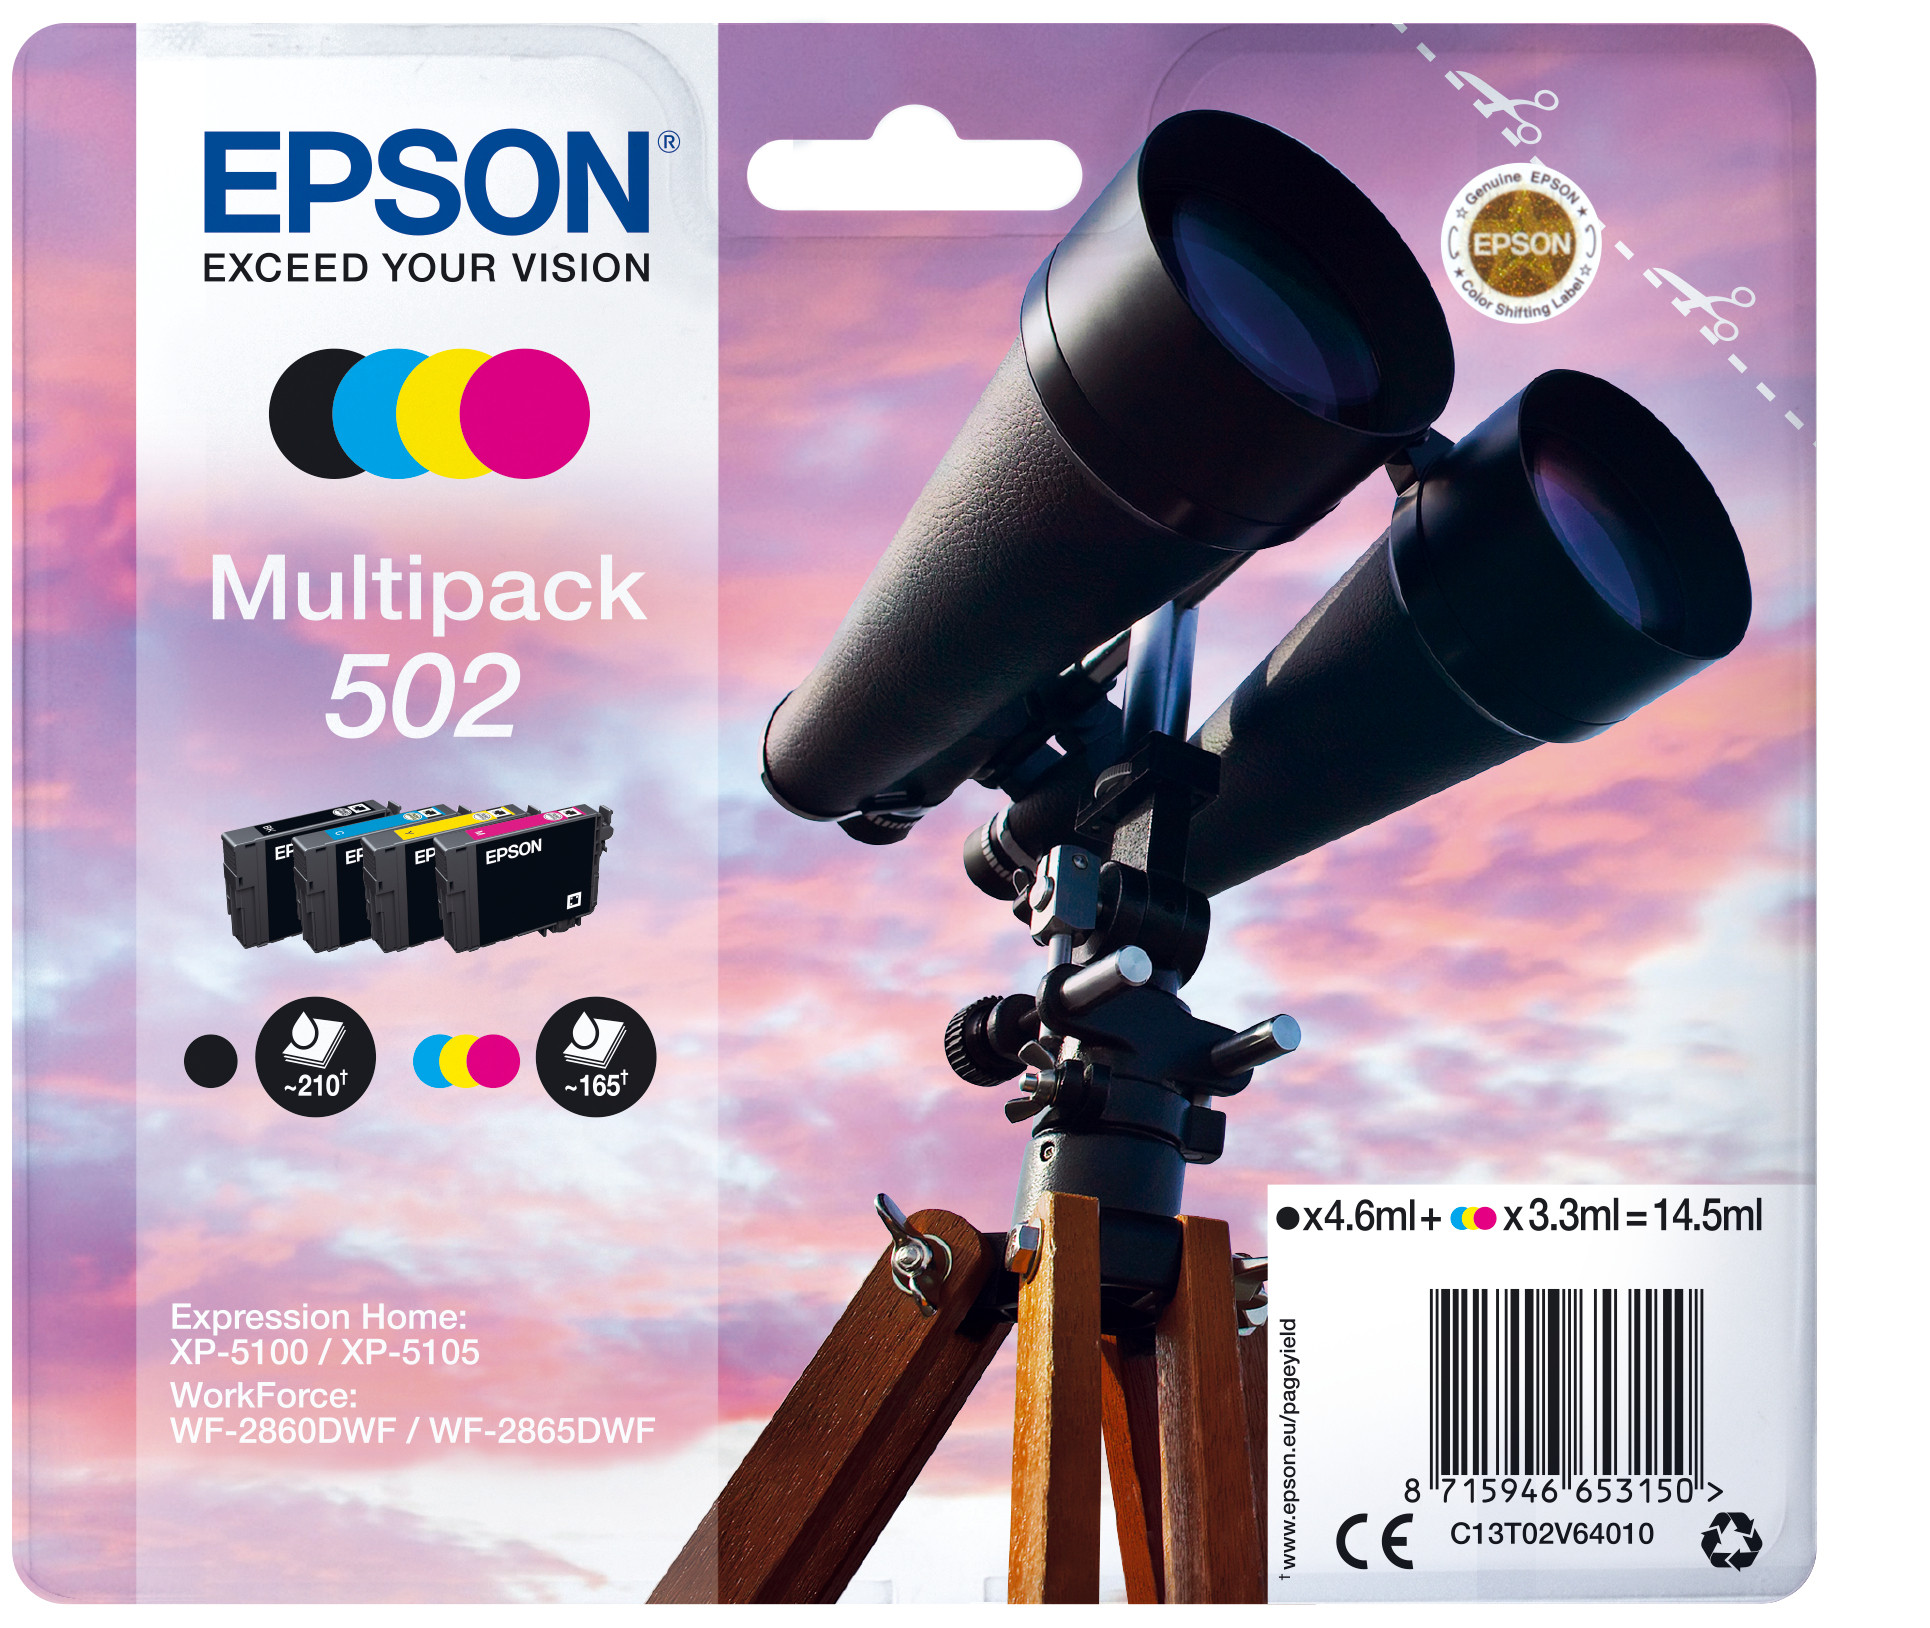 Schrijft een rapport Nodig uit plug Epson Inktcartridge 502 CMYK Pakket Online Bestellen / Kopen Codima